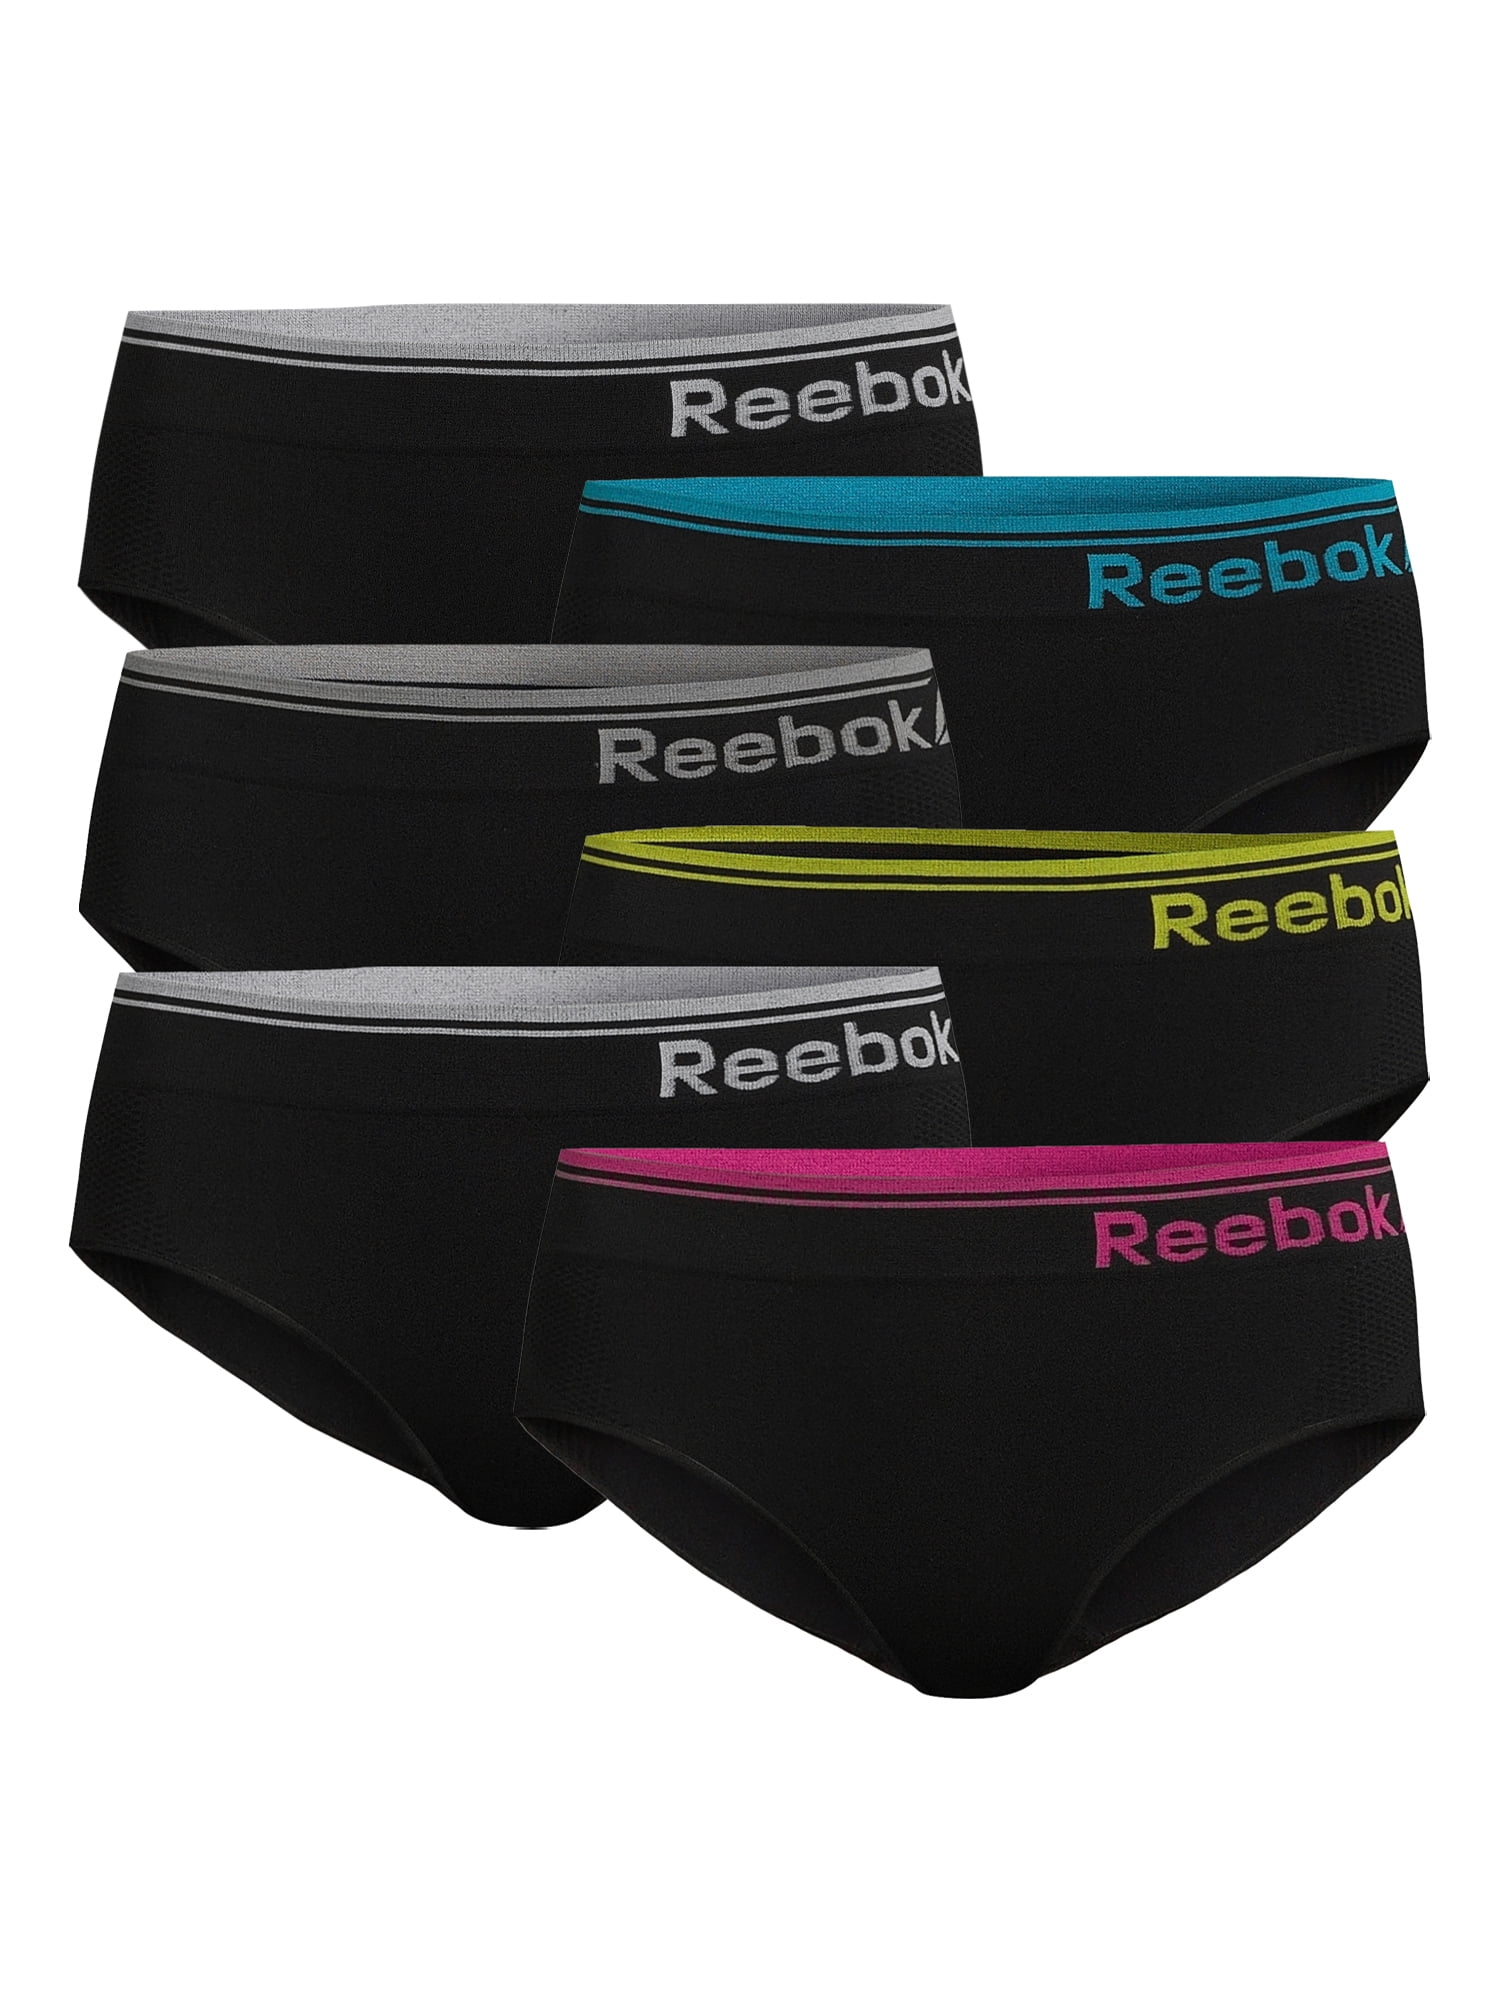 Reebok Girls Underwear Cotton Stretch Hipster Panties, 6-Pack, Sizes S-XL –  Walmart Inventory Checker – BrickSeek